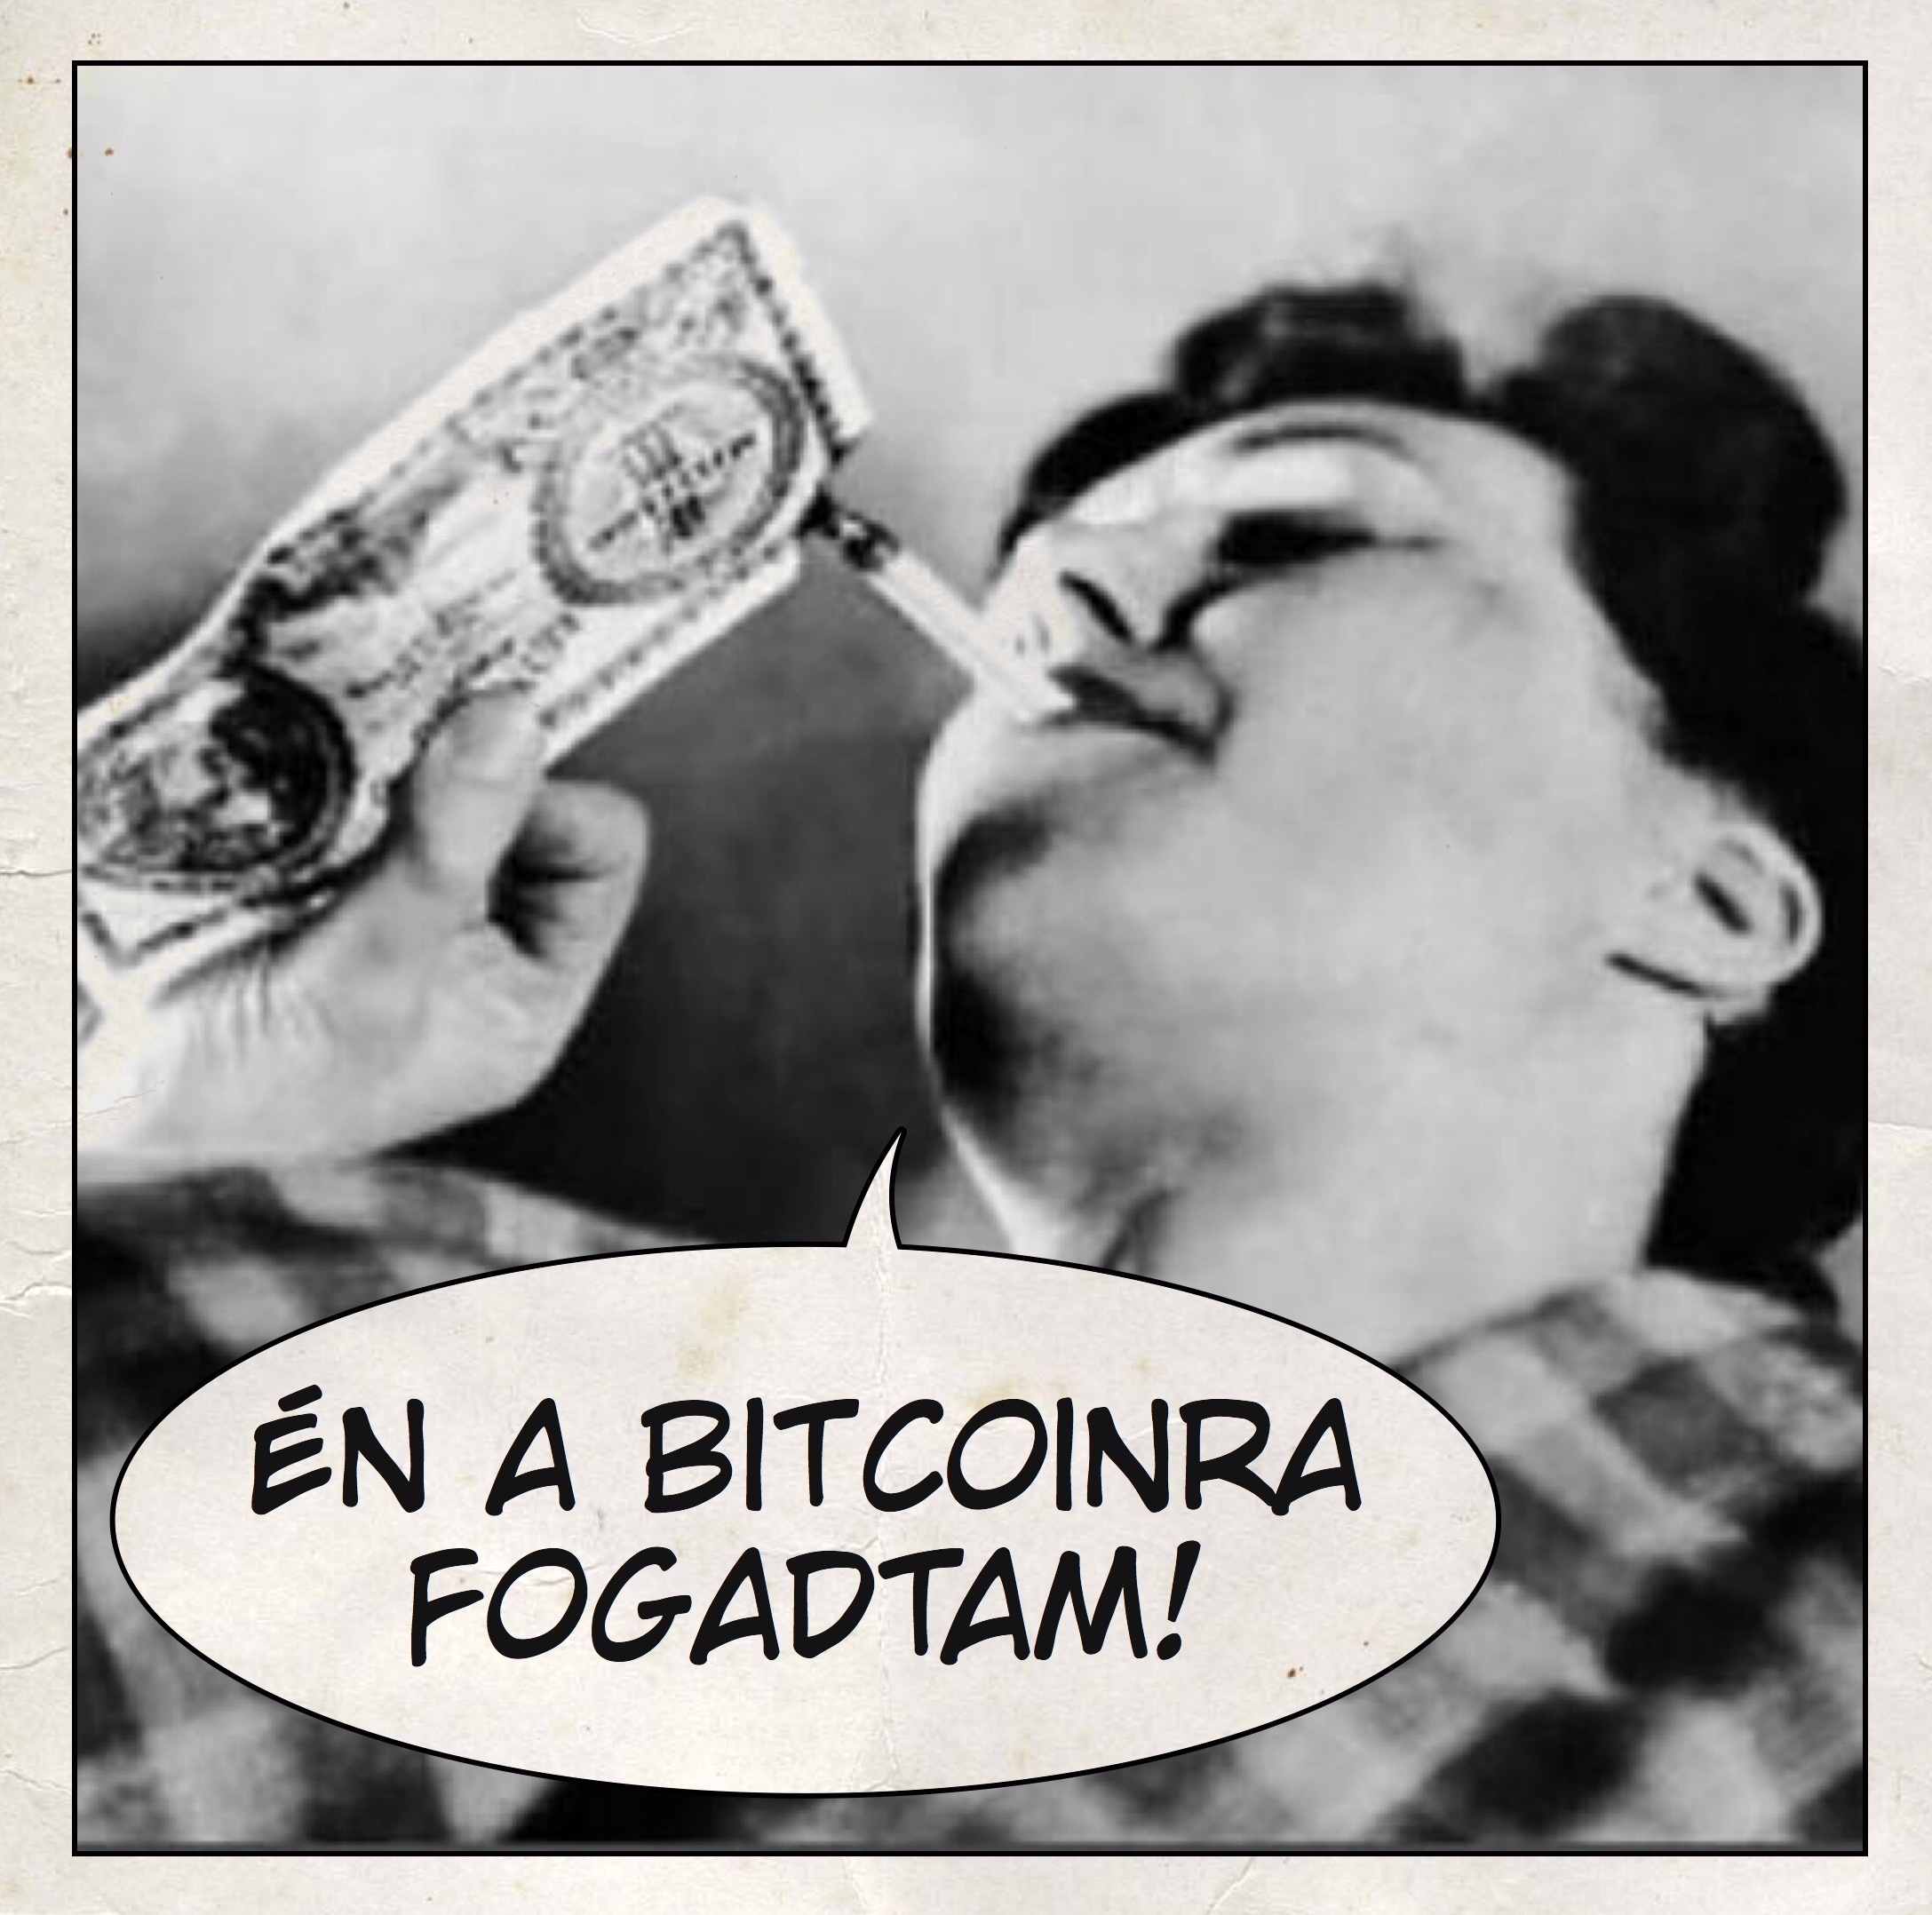 Én a bitcoinra fogadtam!